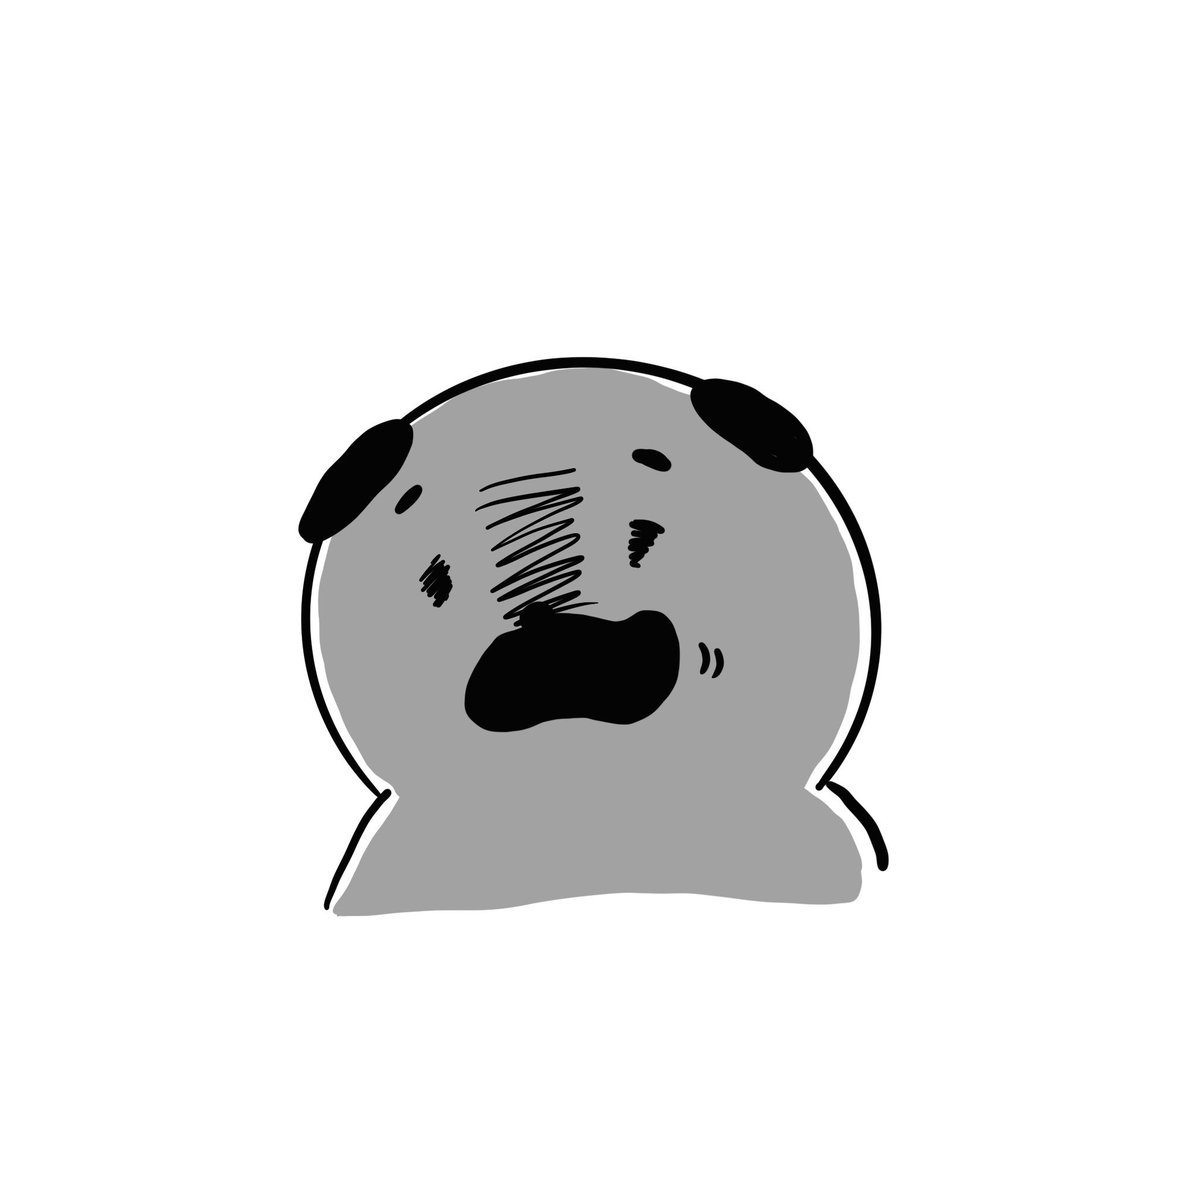 Marubooo まるぼー در توییتر フフッ 笑 絵描きさんと繋がりたい イラスト好きな人と繋がりたい Pug パグ イラスト マンガ まぬけん 日常 毎日 犬 Illustration Illustrator Mydrawing 可愛い かわいい ゆるい いぬ キャラクター Dog ふふ